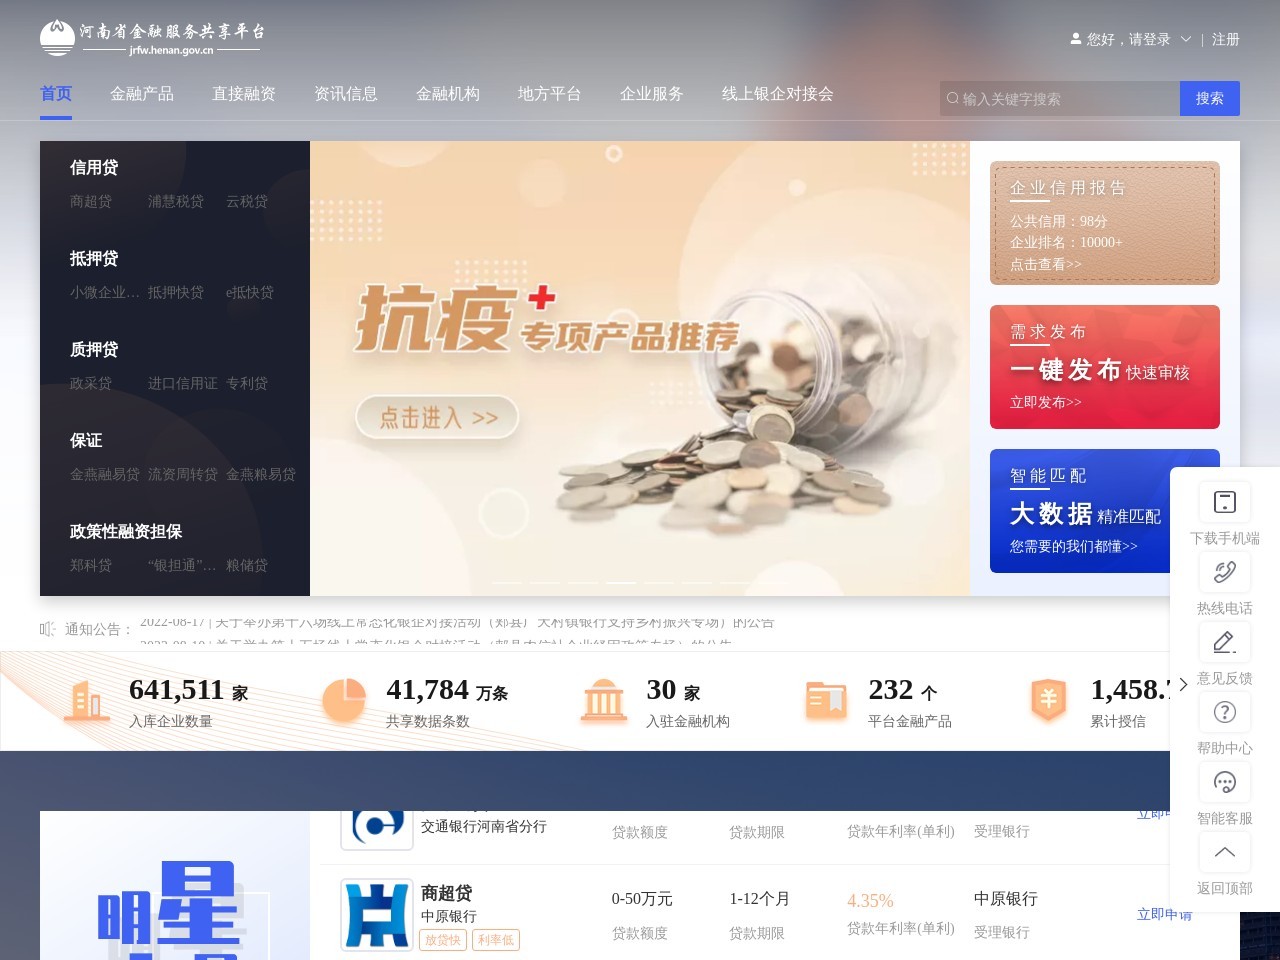 河南省金融服务共享平台